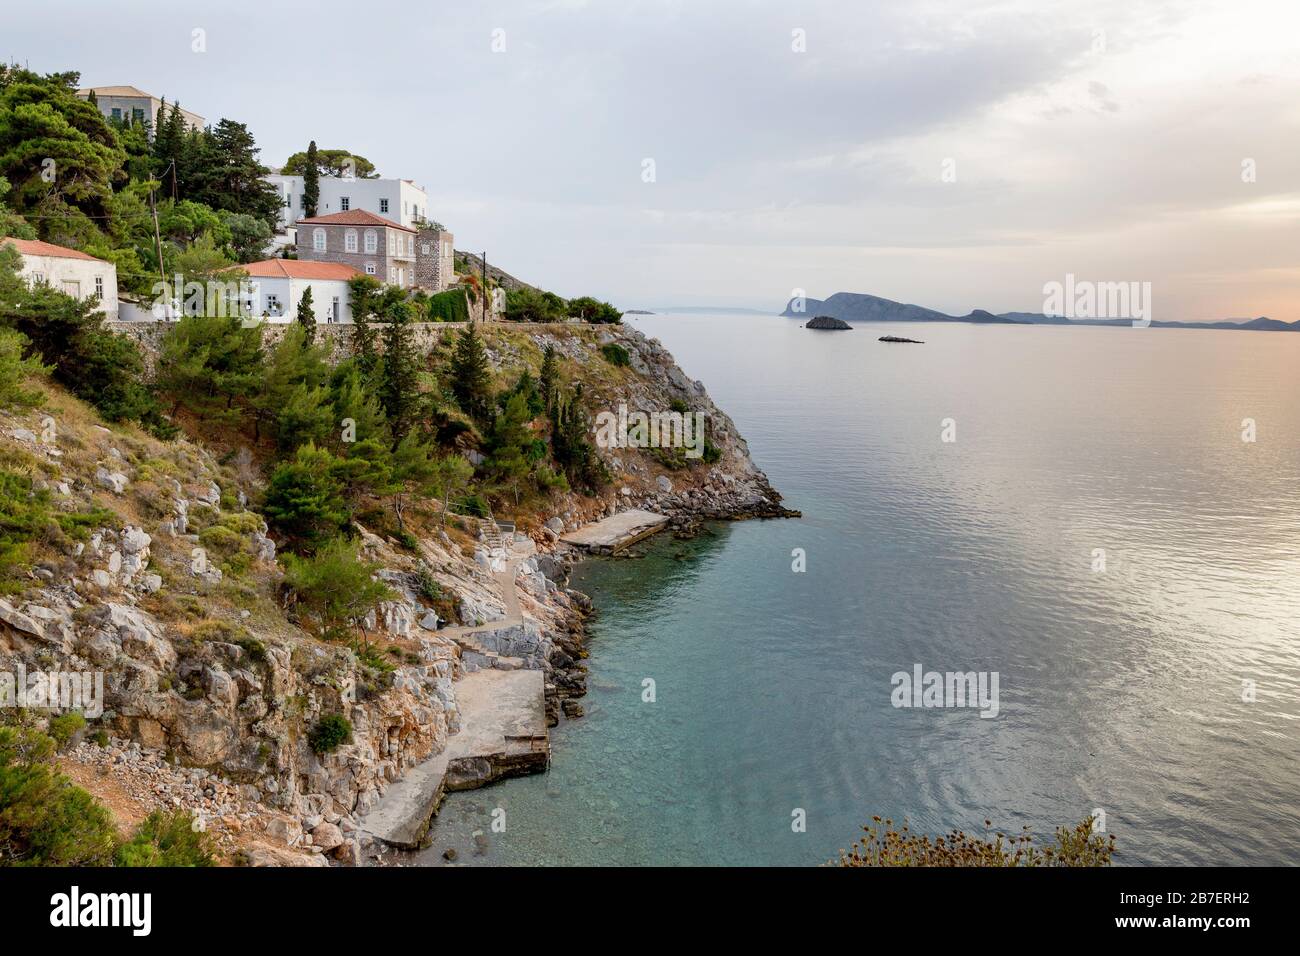 Strände, Luxuswohnungen und ruhige Meere entlang der Agean-Küste der griechischen Insel Hydra, Griechenland Stockfoto